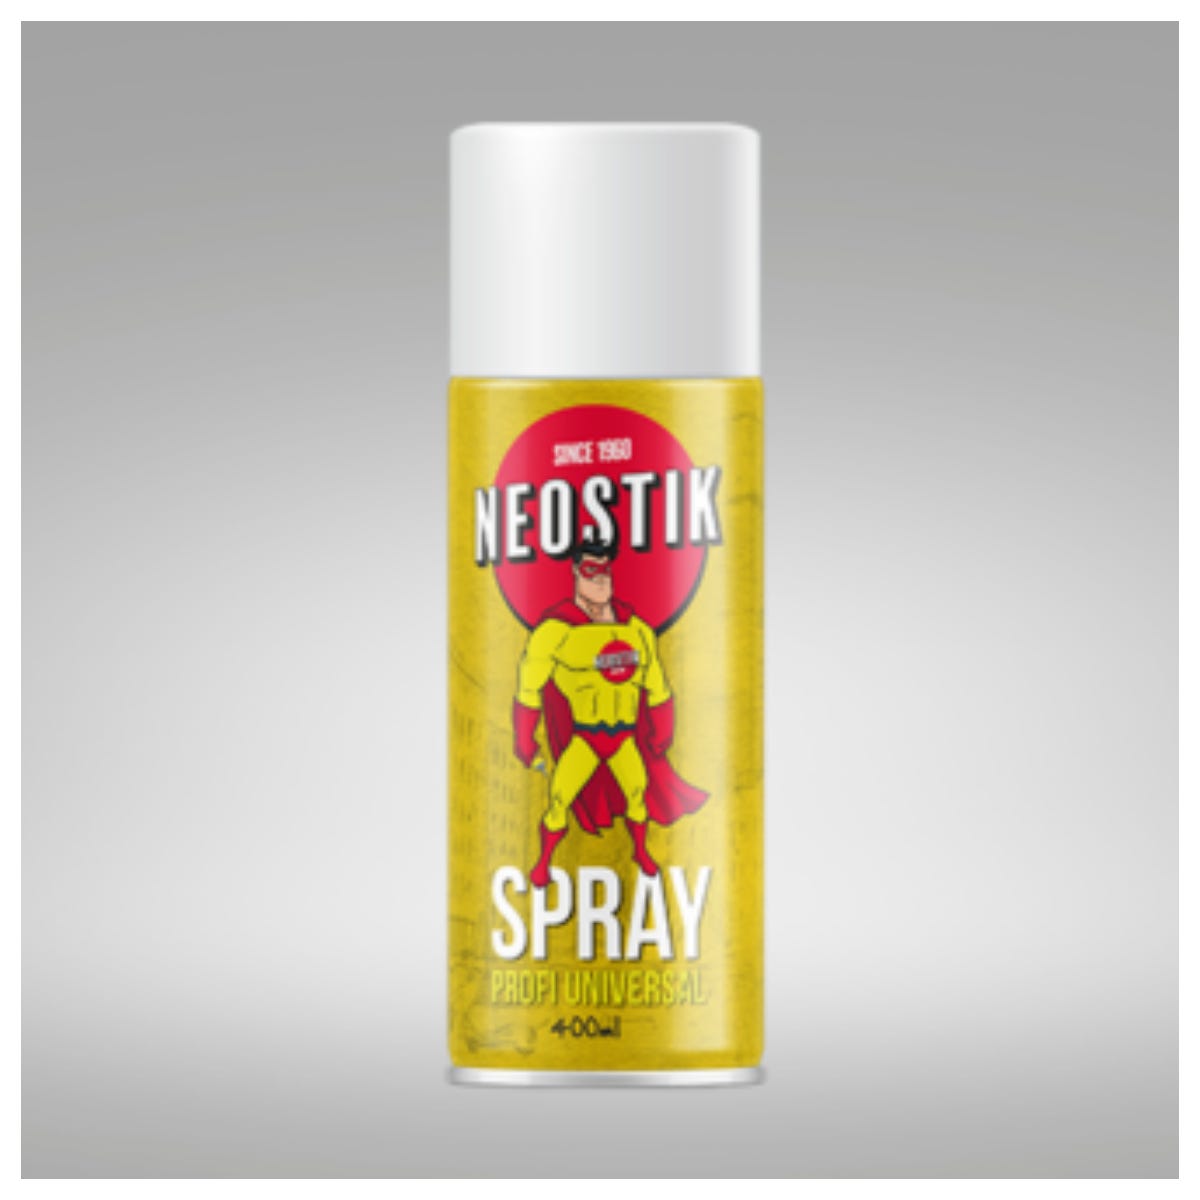 Colla Spray Neostik Trasparente Multiuso Permanente Per Tessuto Cielo Auto,  Resistente alle Alte Temperature, Bomboletta spray ALTA QUALITA' 400ML